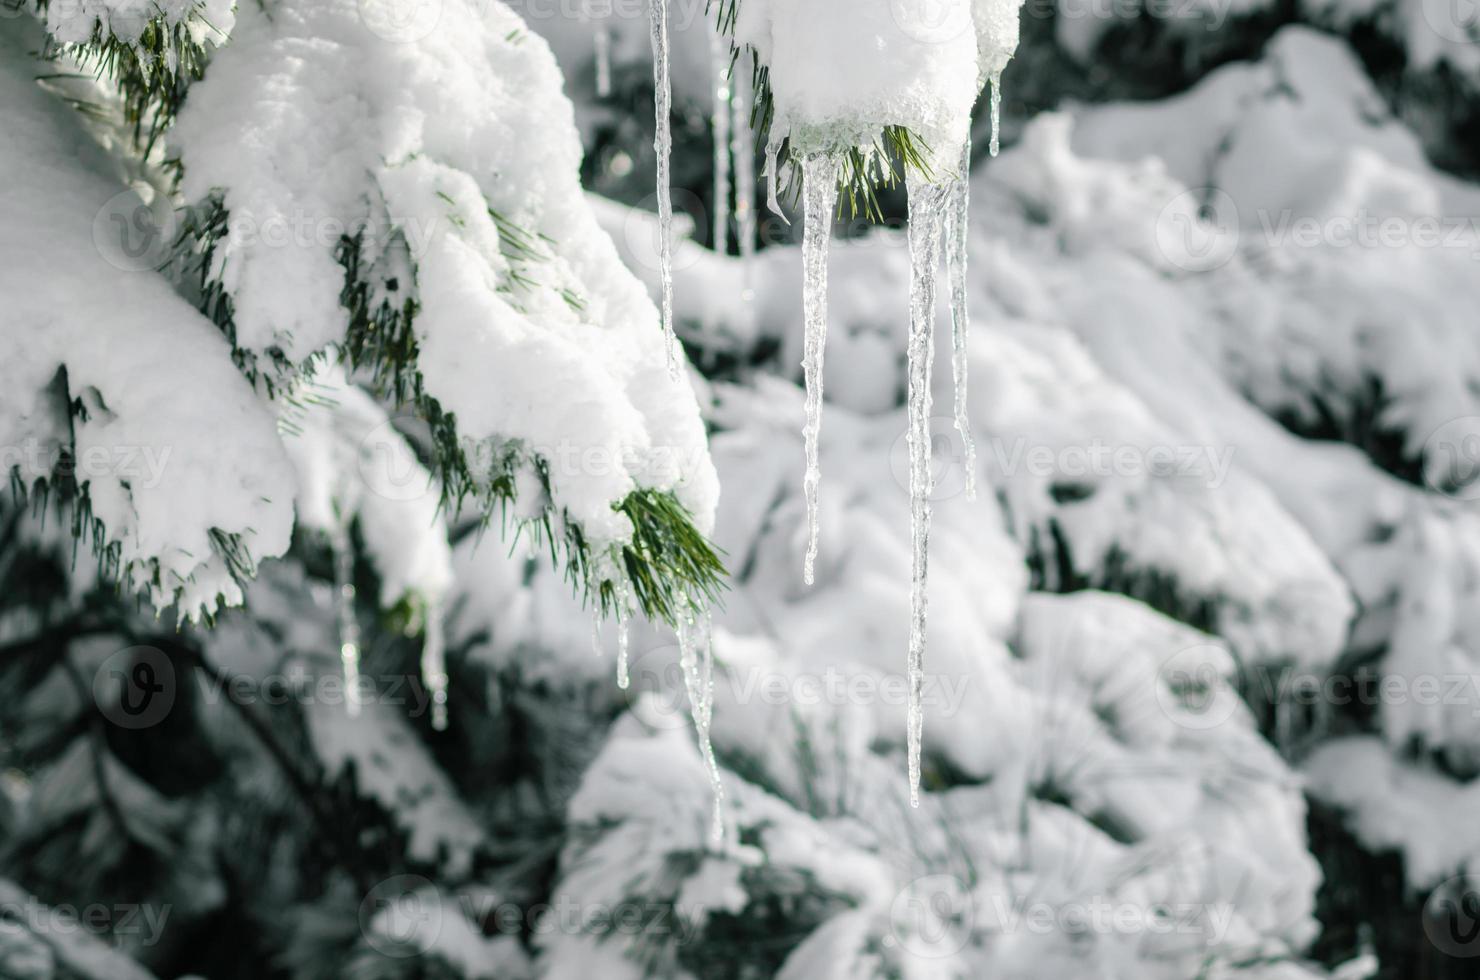 glaçons sur les branches enneigées d'épinette close up, nature hiver froid fond photo